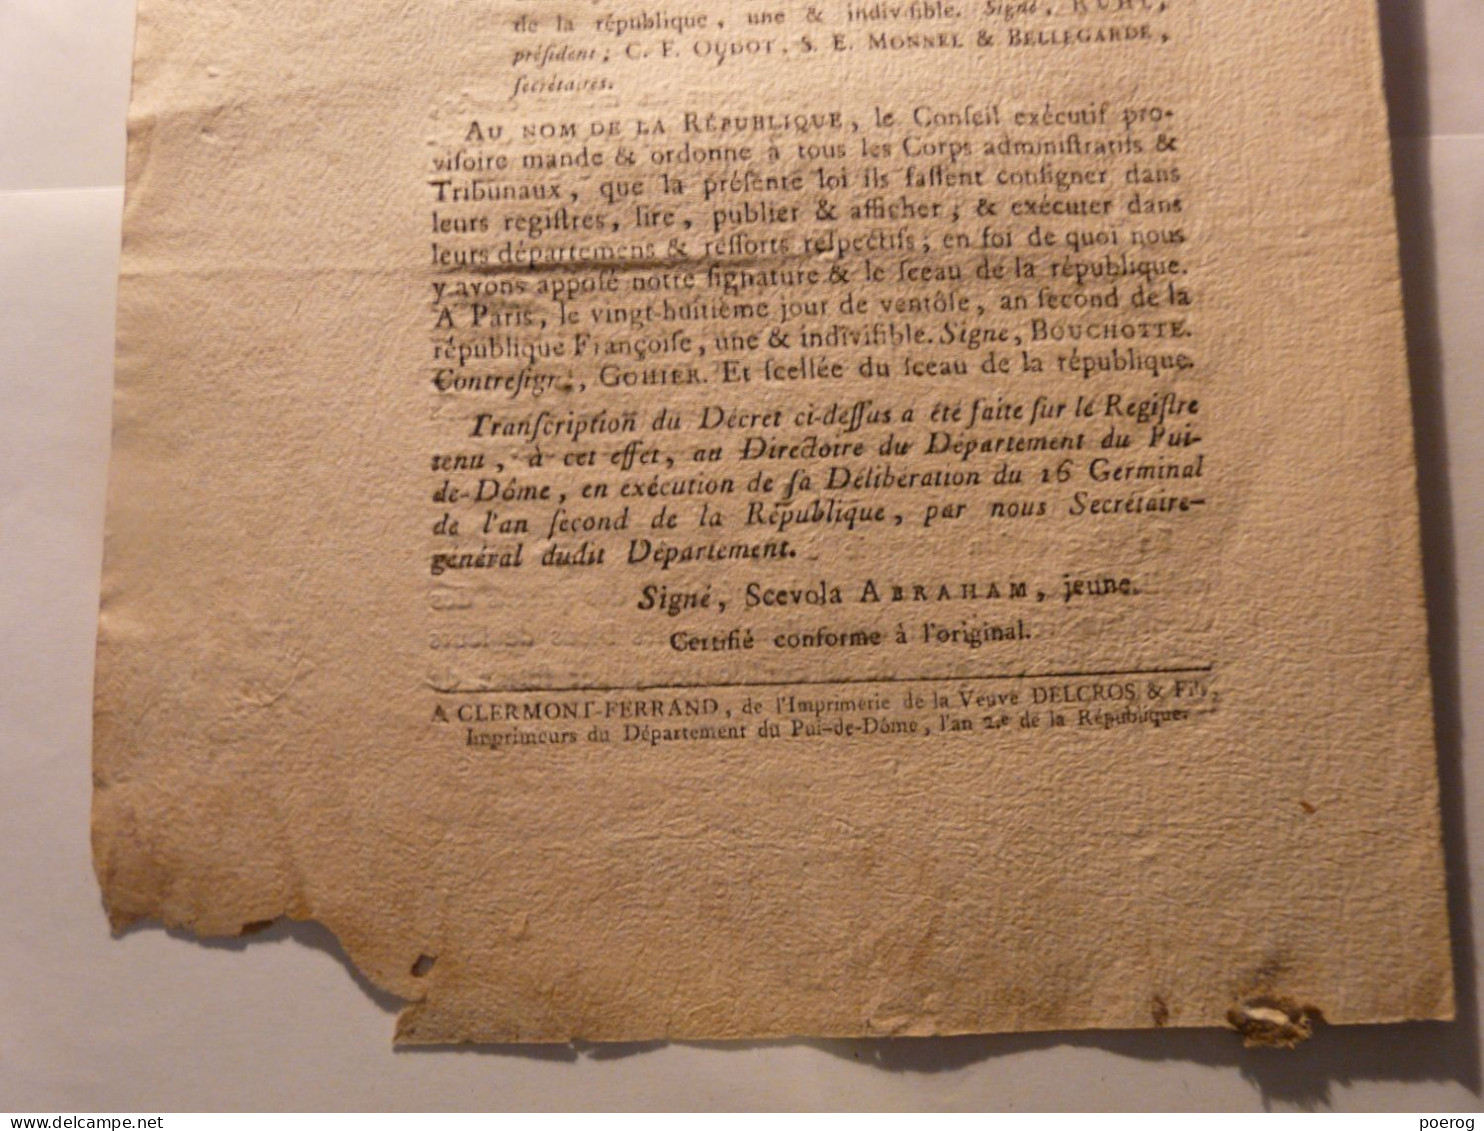 DECRET CONVENTION NATIONALE Du 12 MARS 1794 - ECCLESIASTIQUES FRERES LAIS CONVERS DEPORTES RELIGIEUX VENDEE CHOUANS - Wetten & Decreten